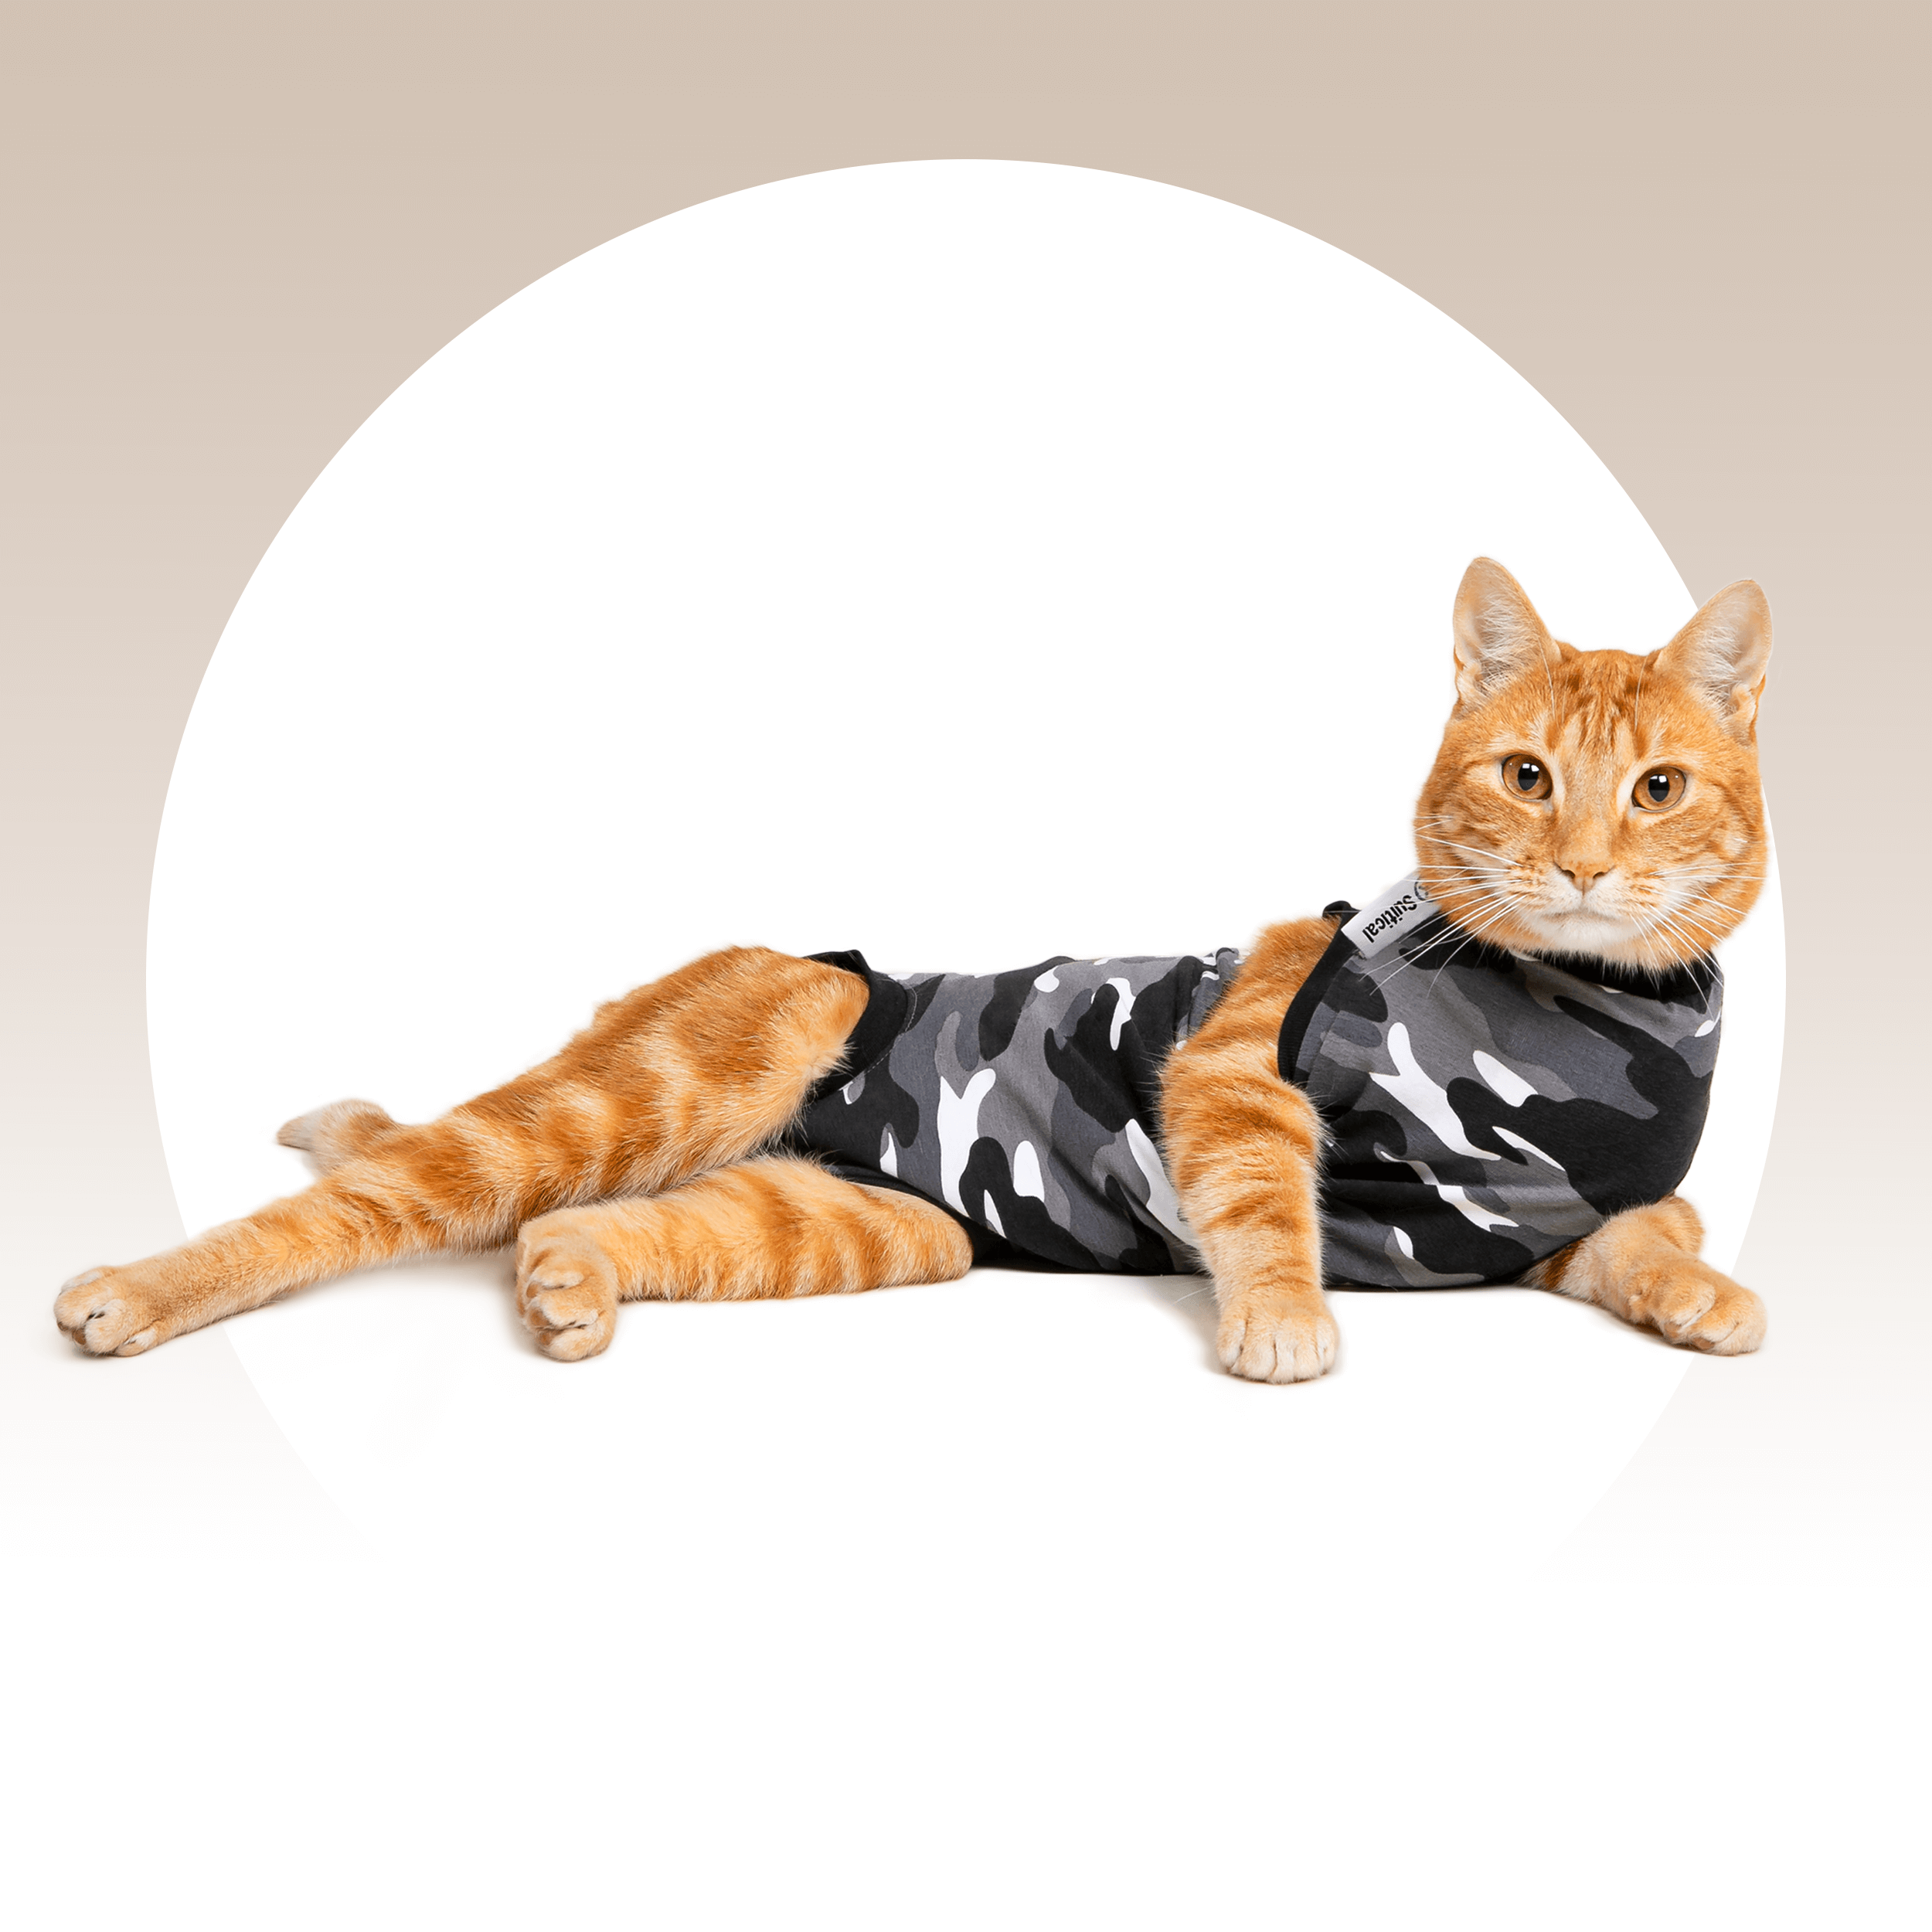 Suitical Recovery Suit Cat - Black Camo - Bark, Bath & Beyond Pet Boutique